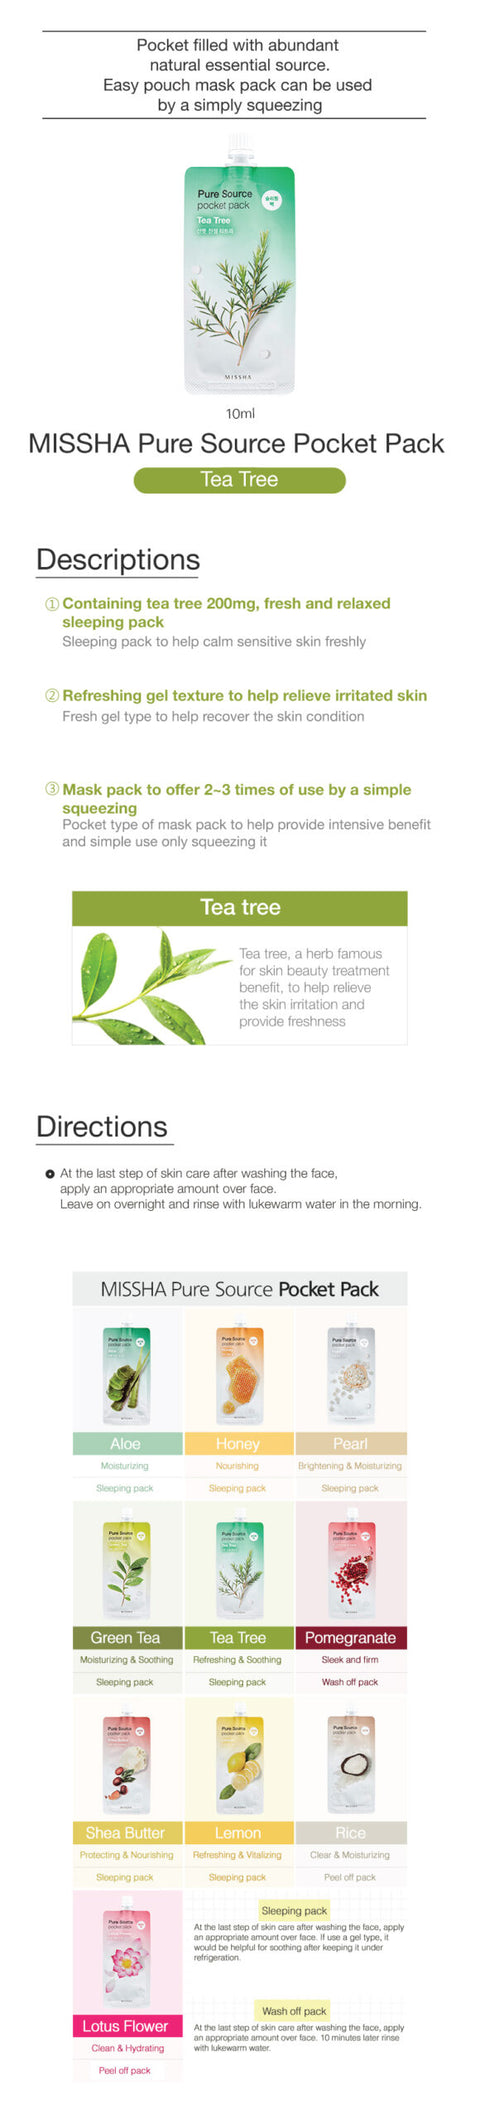 MISSHA Pure Source Pocket Pack Tea Tree 10ml MISSHA